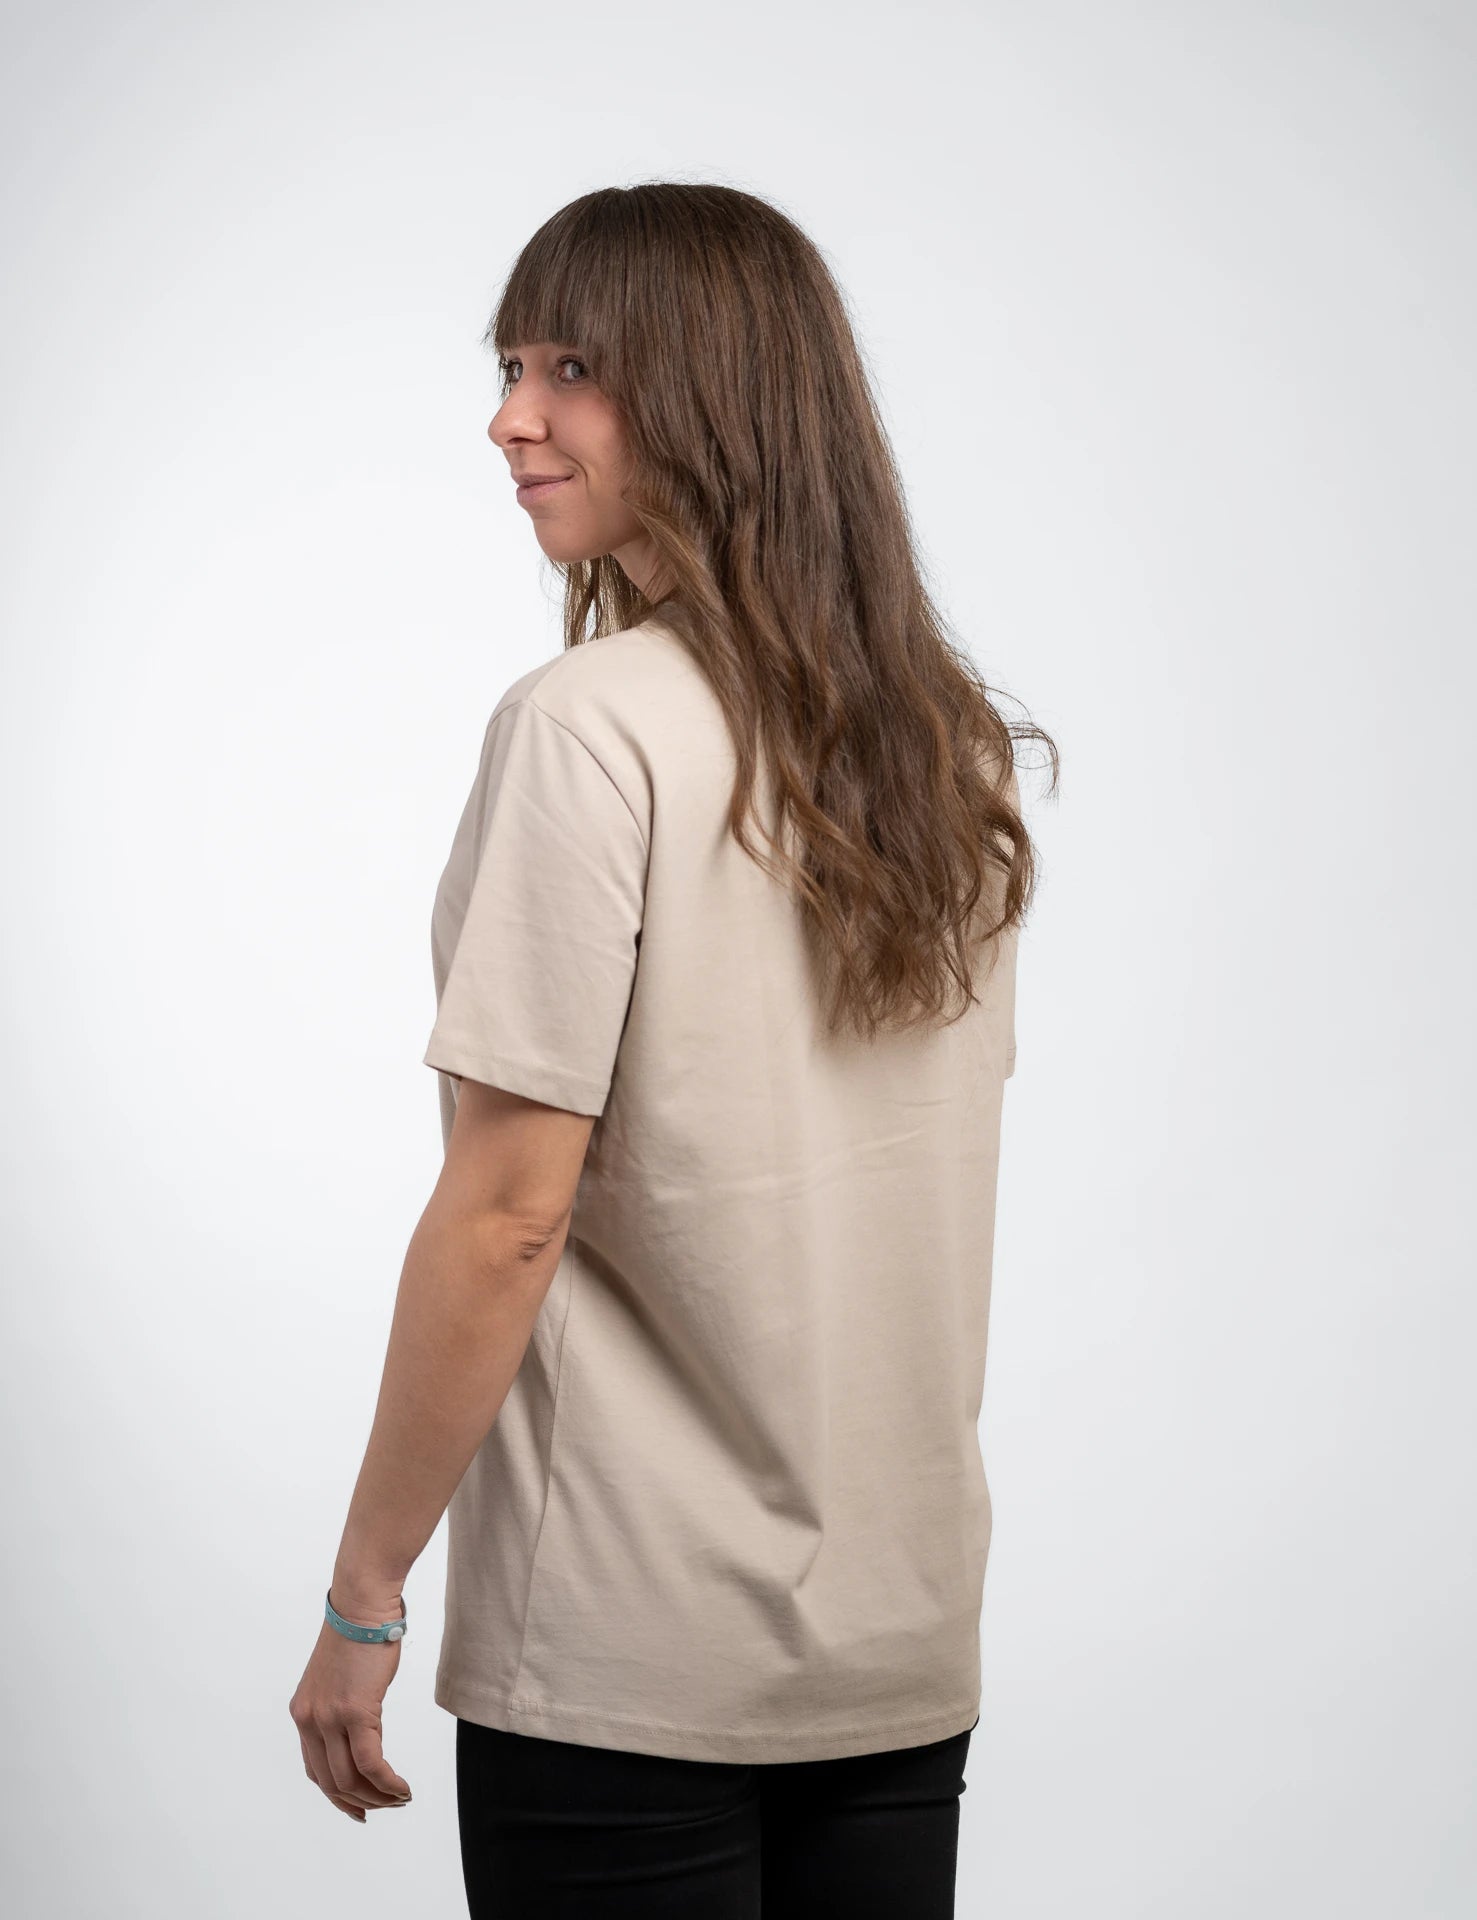 Sand classic T-Shirt aus Bio-Baumwolle mit blauem, onedare totry Stick mittig auf der Brust.